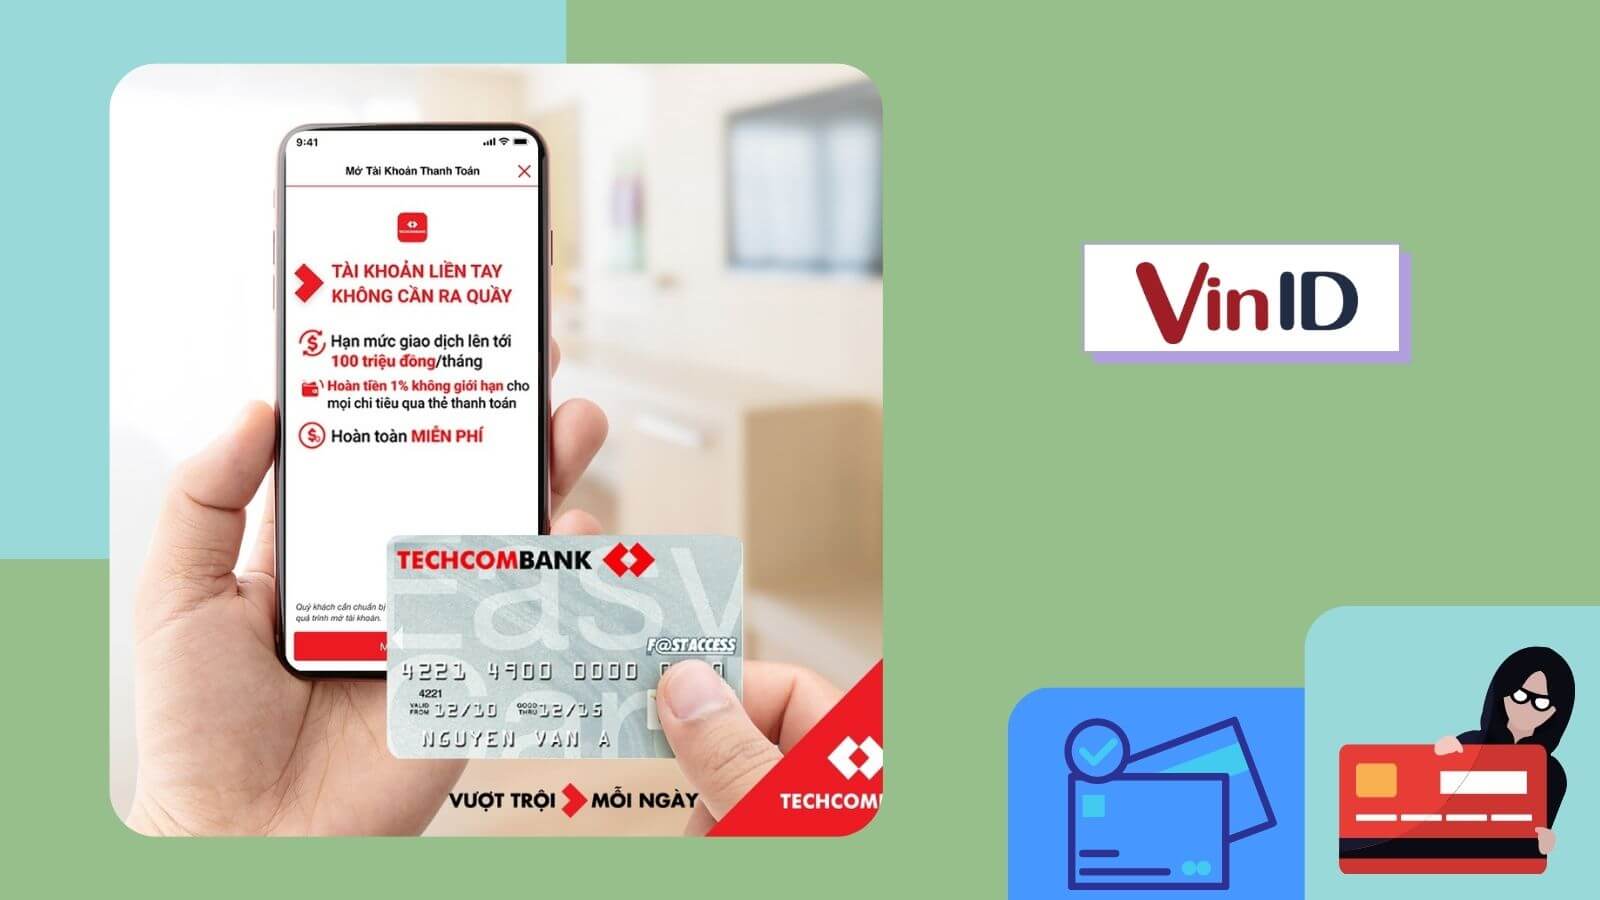 Thẻ Techcombank online là lựa chọn tuyệt vời nhất dành cho những người muốn sở hữu một thẻ được bảo mật tốt nhất và cung cấp nhiều tiện ích hỗ trợ cho các hoạt động tài chính của mình. Hãy cùng khám phá những lợi ích đến từ thẻ Techcombank online qua hình ảnh đặc trưng.